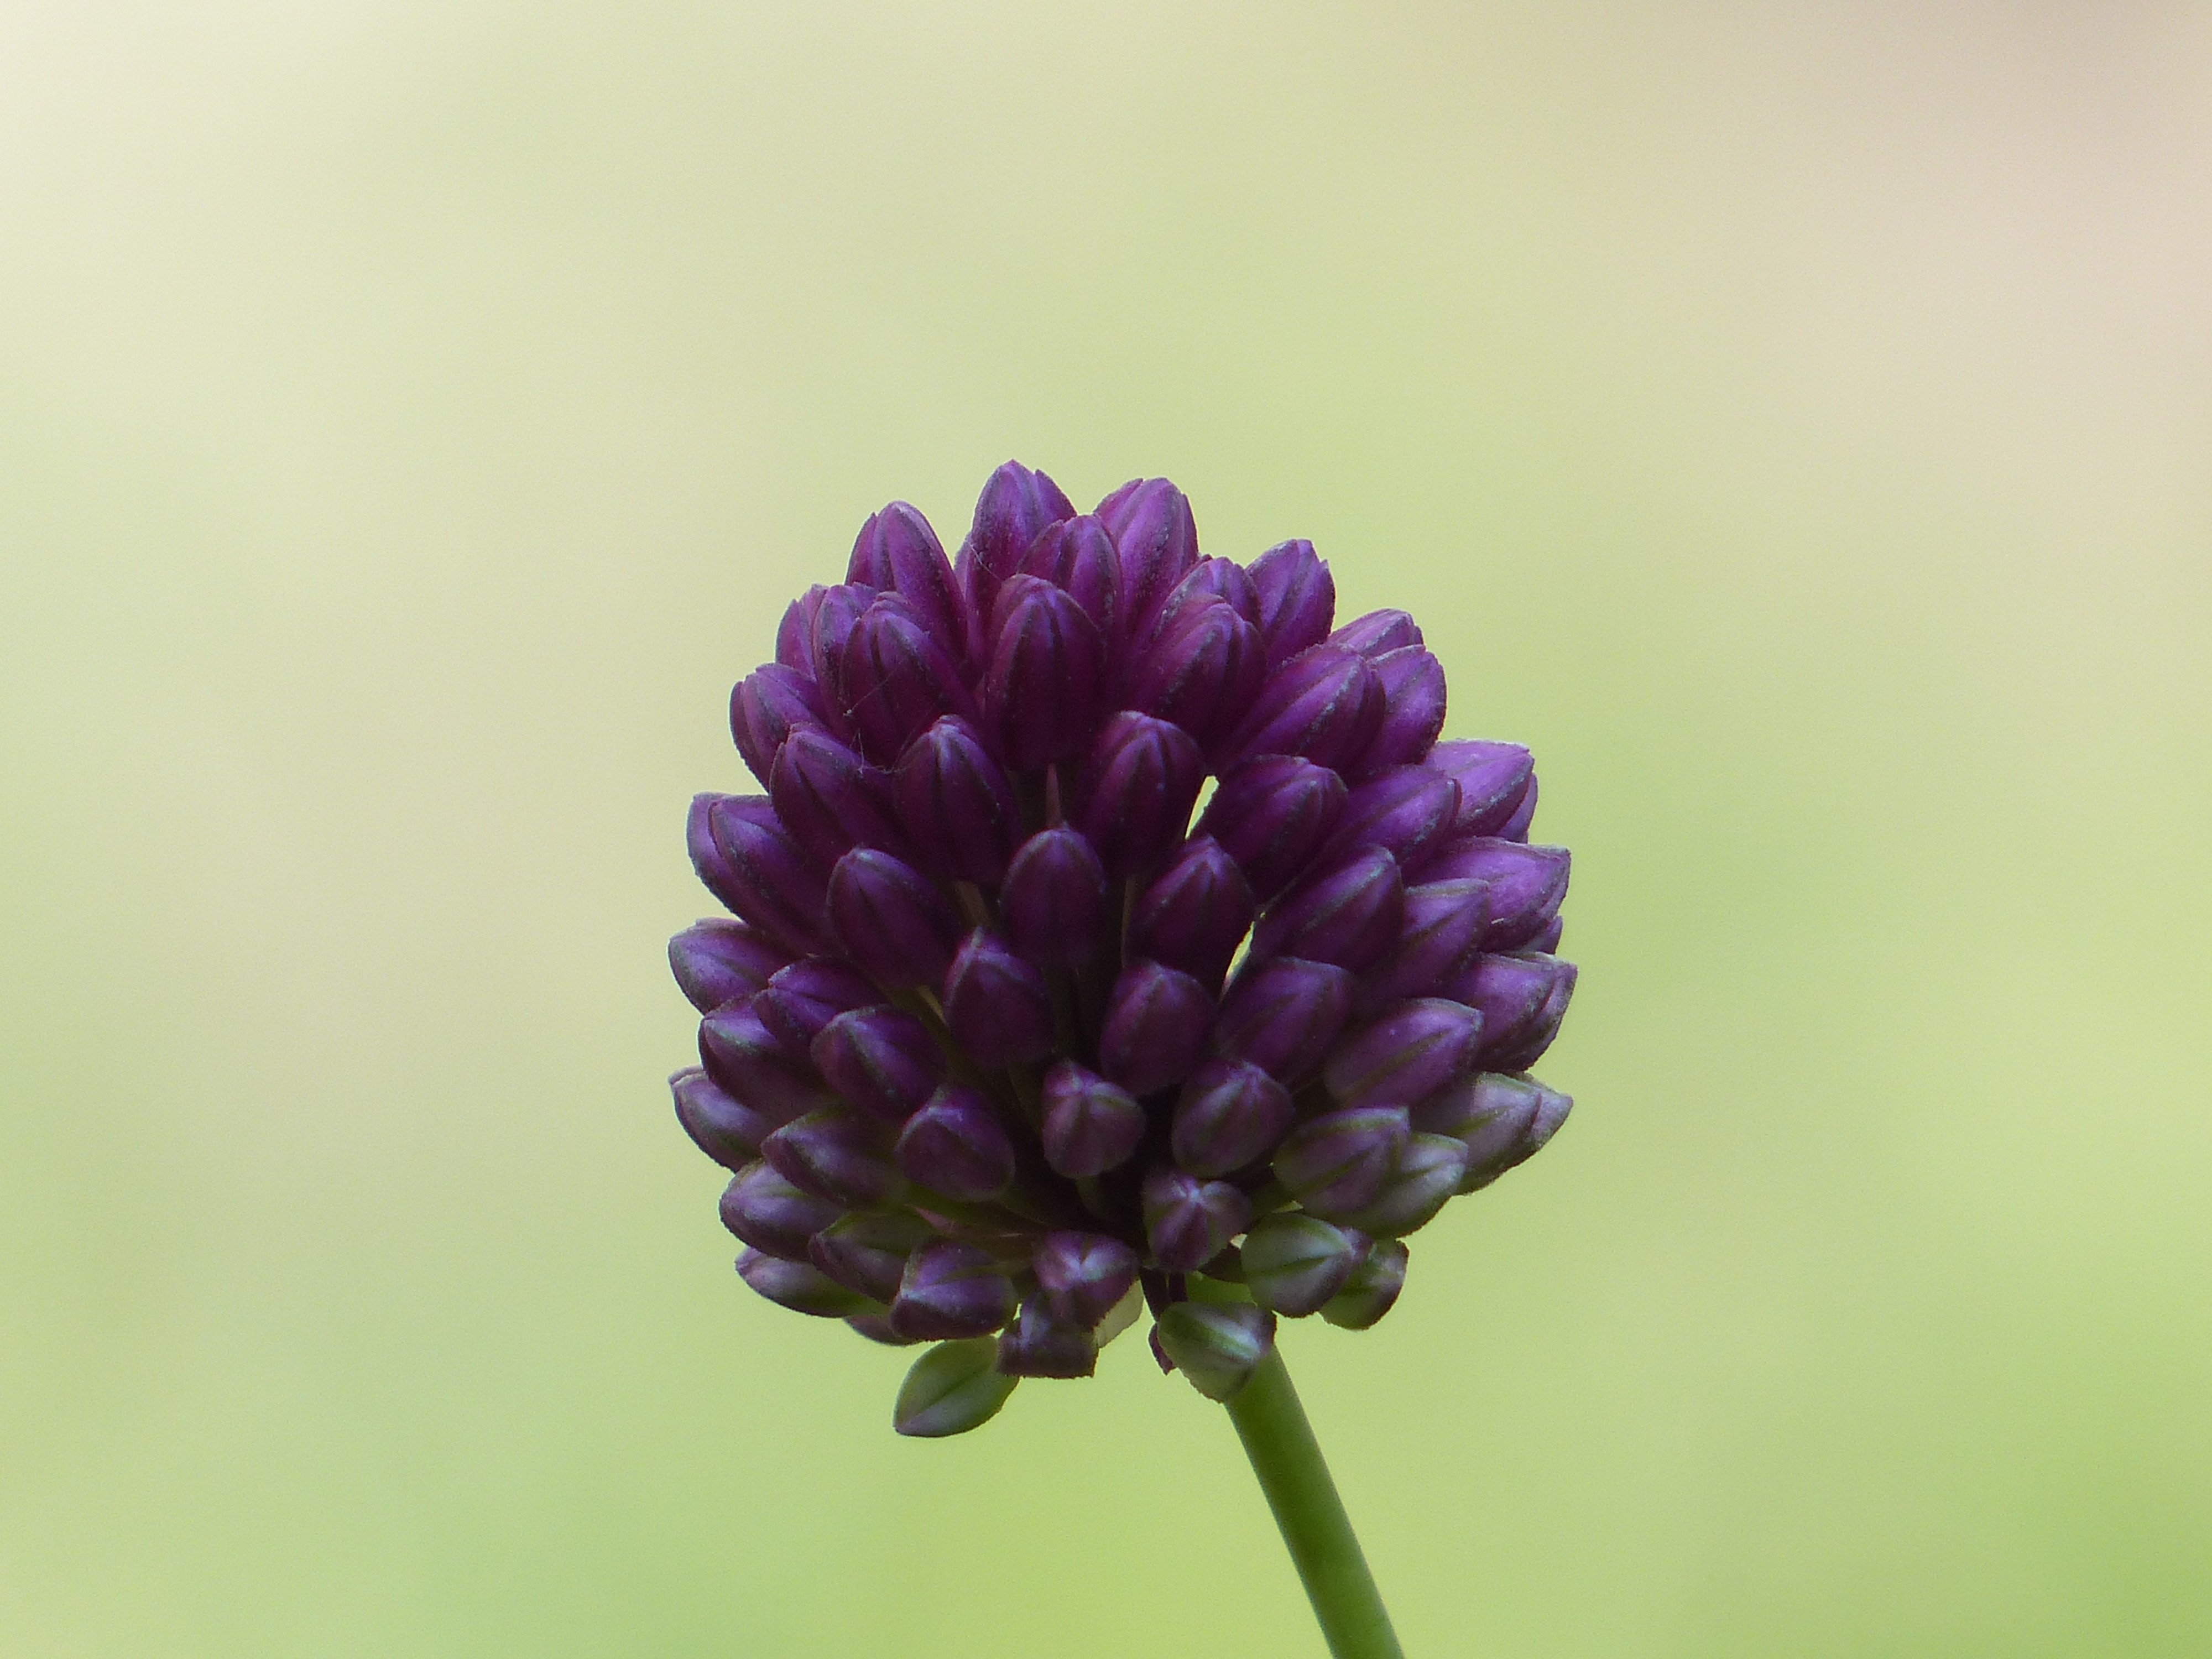 purple flower tilt shift lens photography